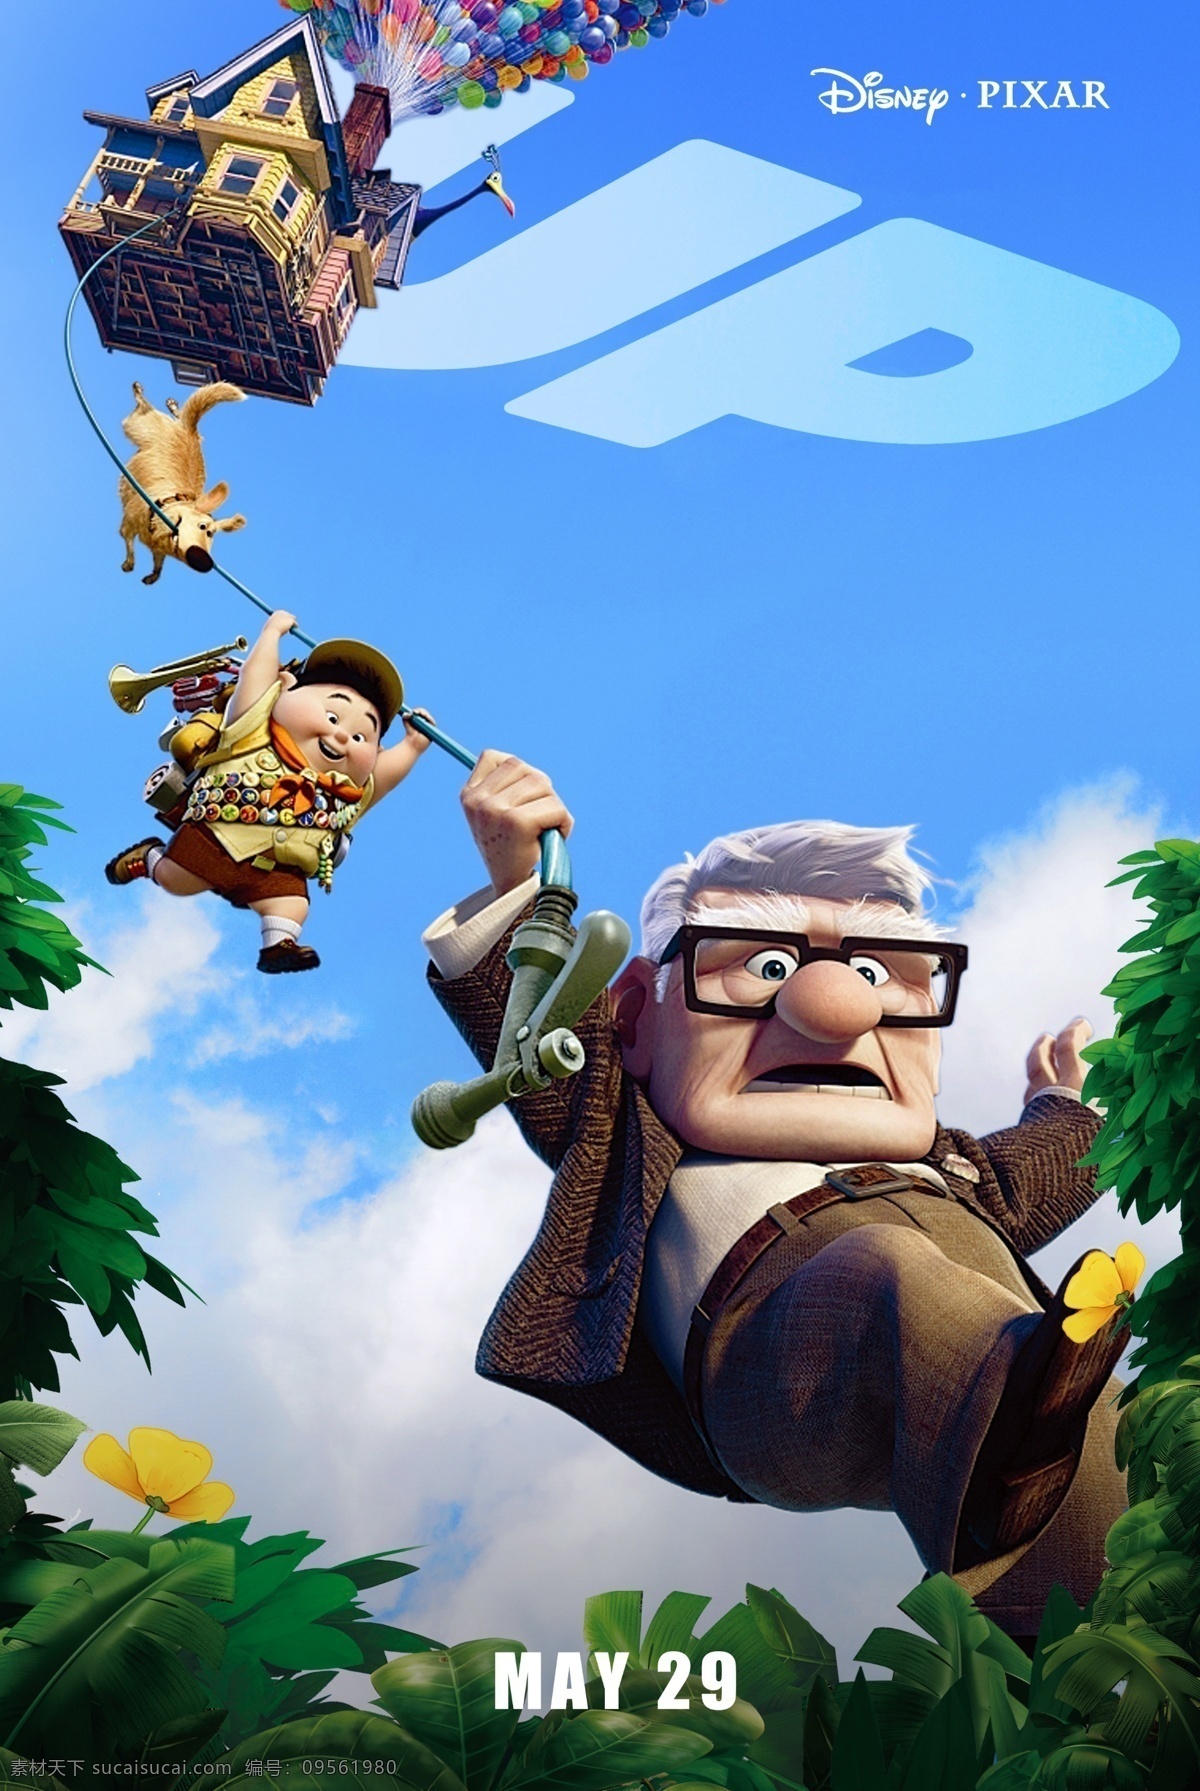 飞屋环游记 天外奇迹 卡尔 罗素 查尔斯 道格 大鸟 凯文 皮克斯 迪斯尼 剧照 动画电影 pixar 动漫动画